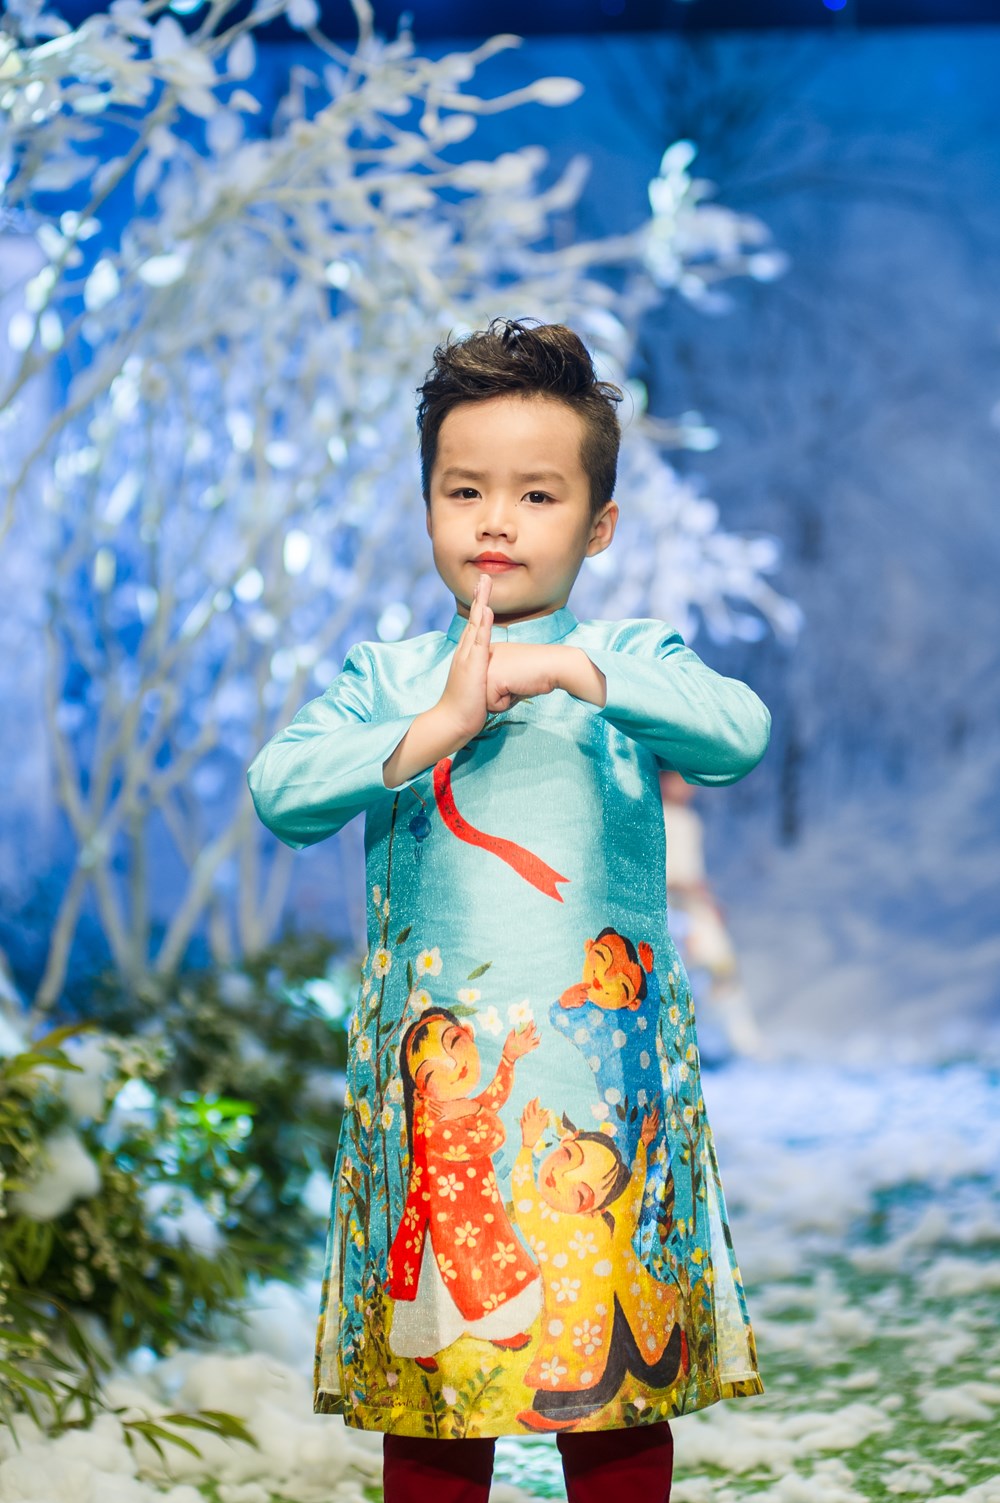 Tuần lễ thời trang trẻ em Việt Nam trên khu vườn tuyết trắng - ảnh 3